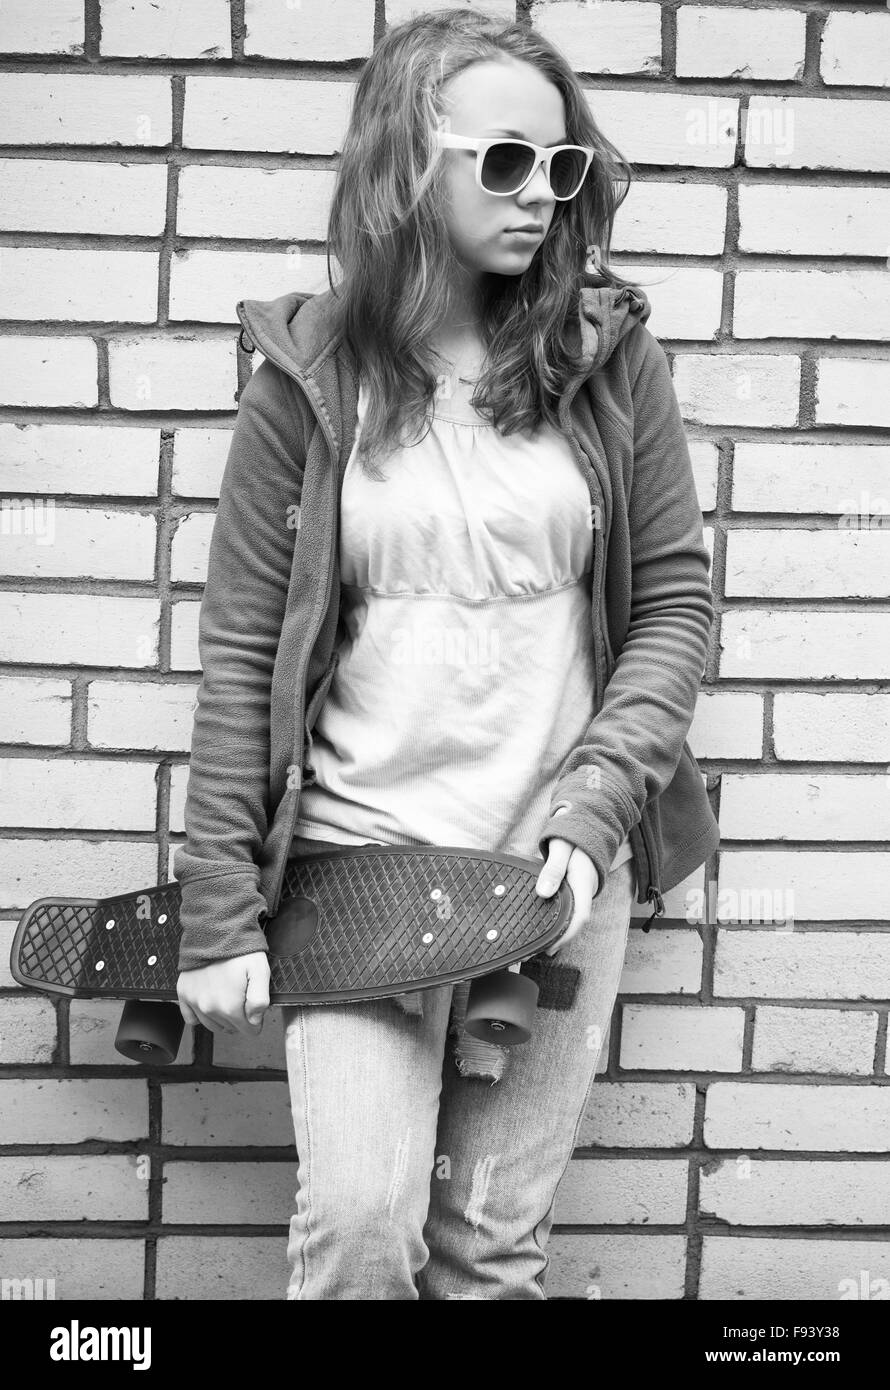 Adolescente en jeans y gafas de sol posee monopatín sobre urban pared de ladrillo, fotos en monocromo de fondo Foto de stock